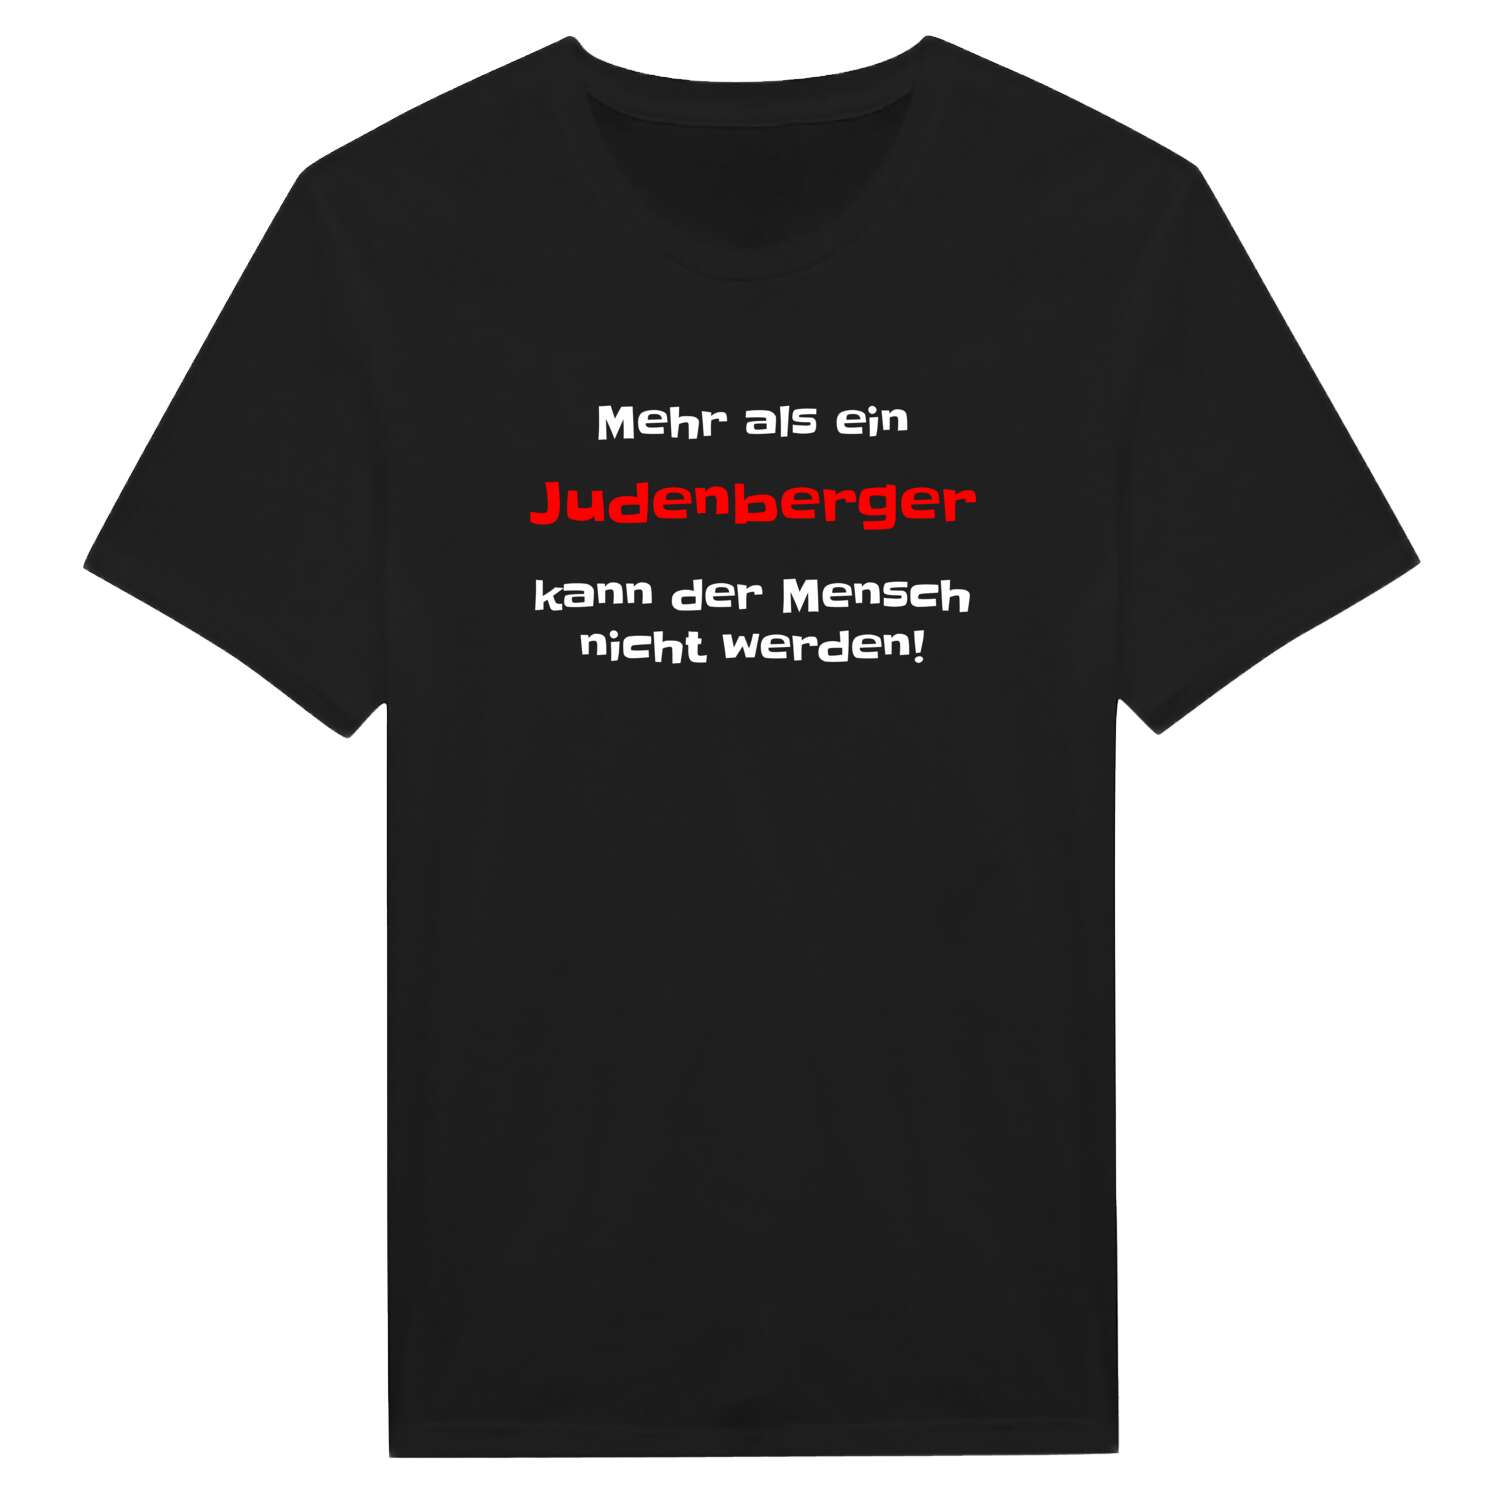 Judenberg T-Shirt »Mehr als ein«